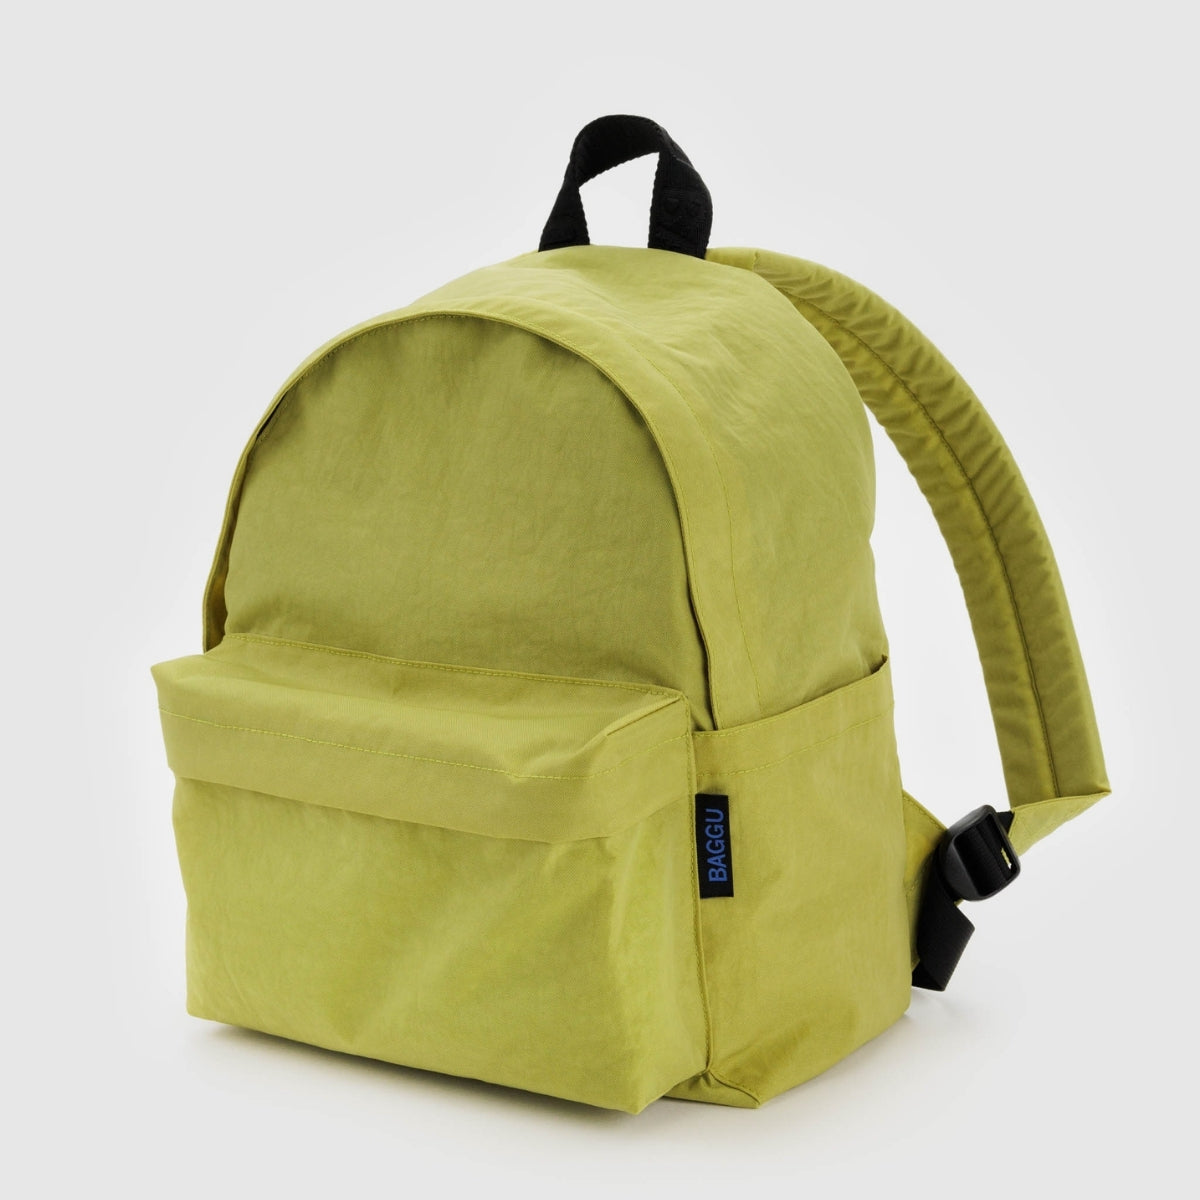 Baggu Medium Nylon Backpack in Lemongrass